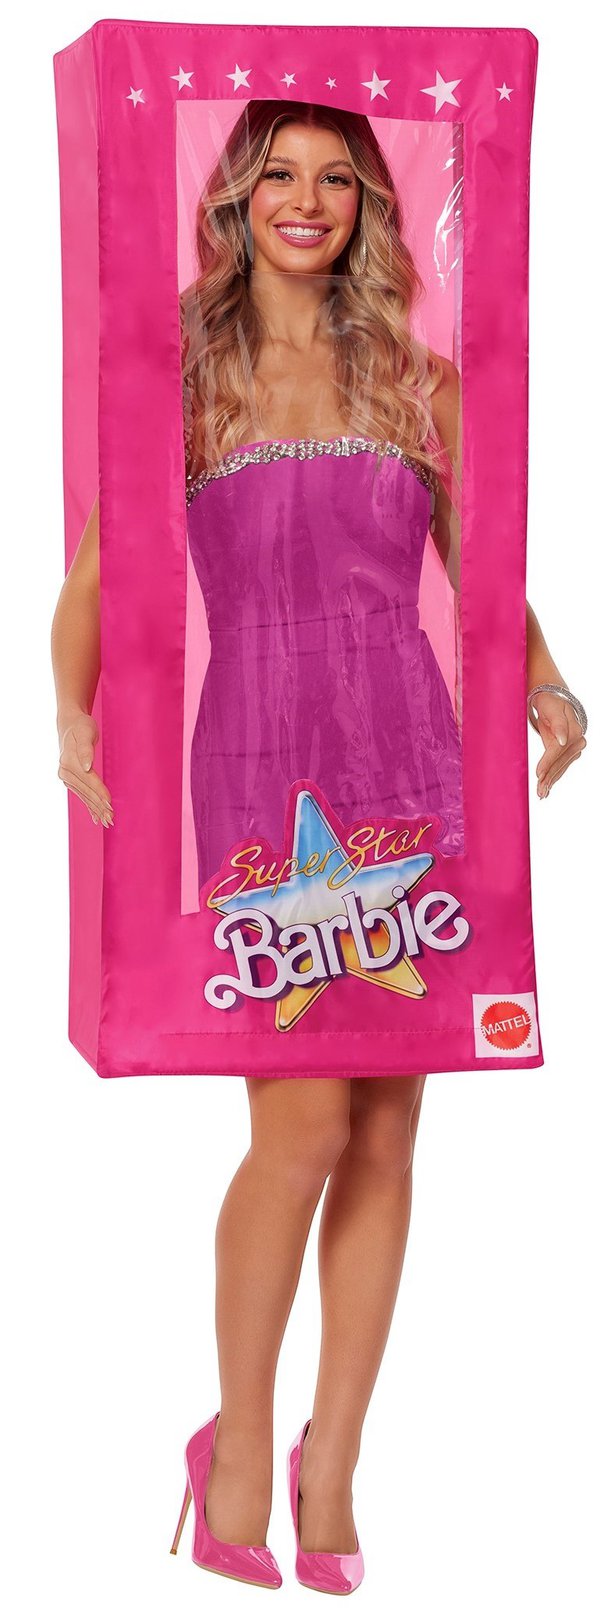 Barbie Box 106534.jpg